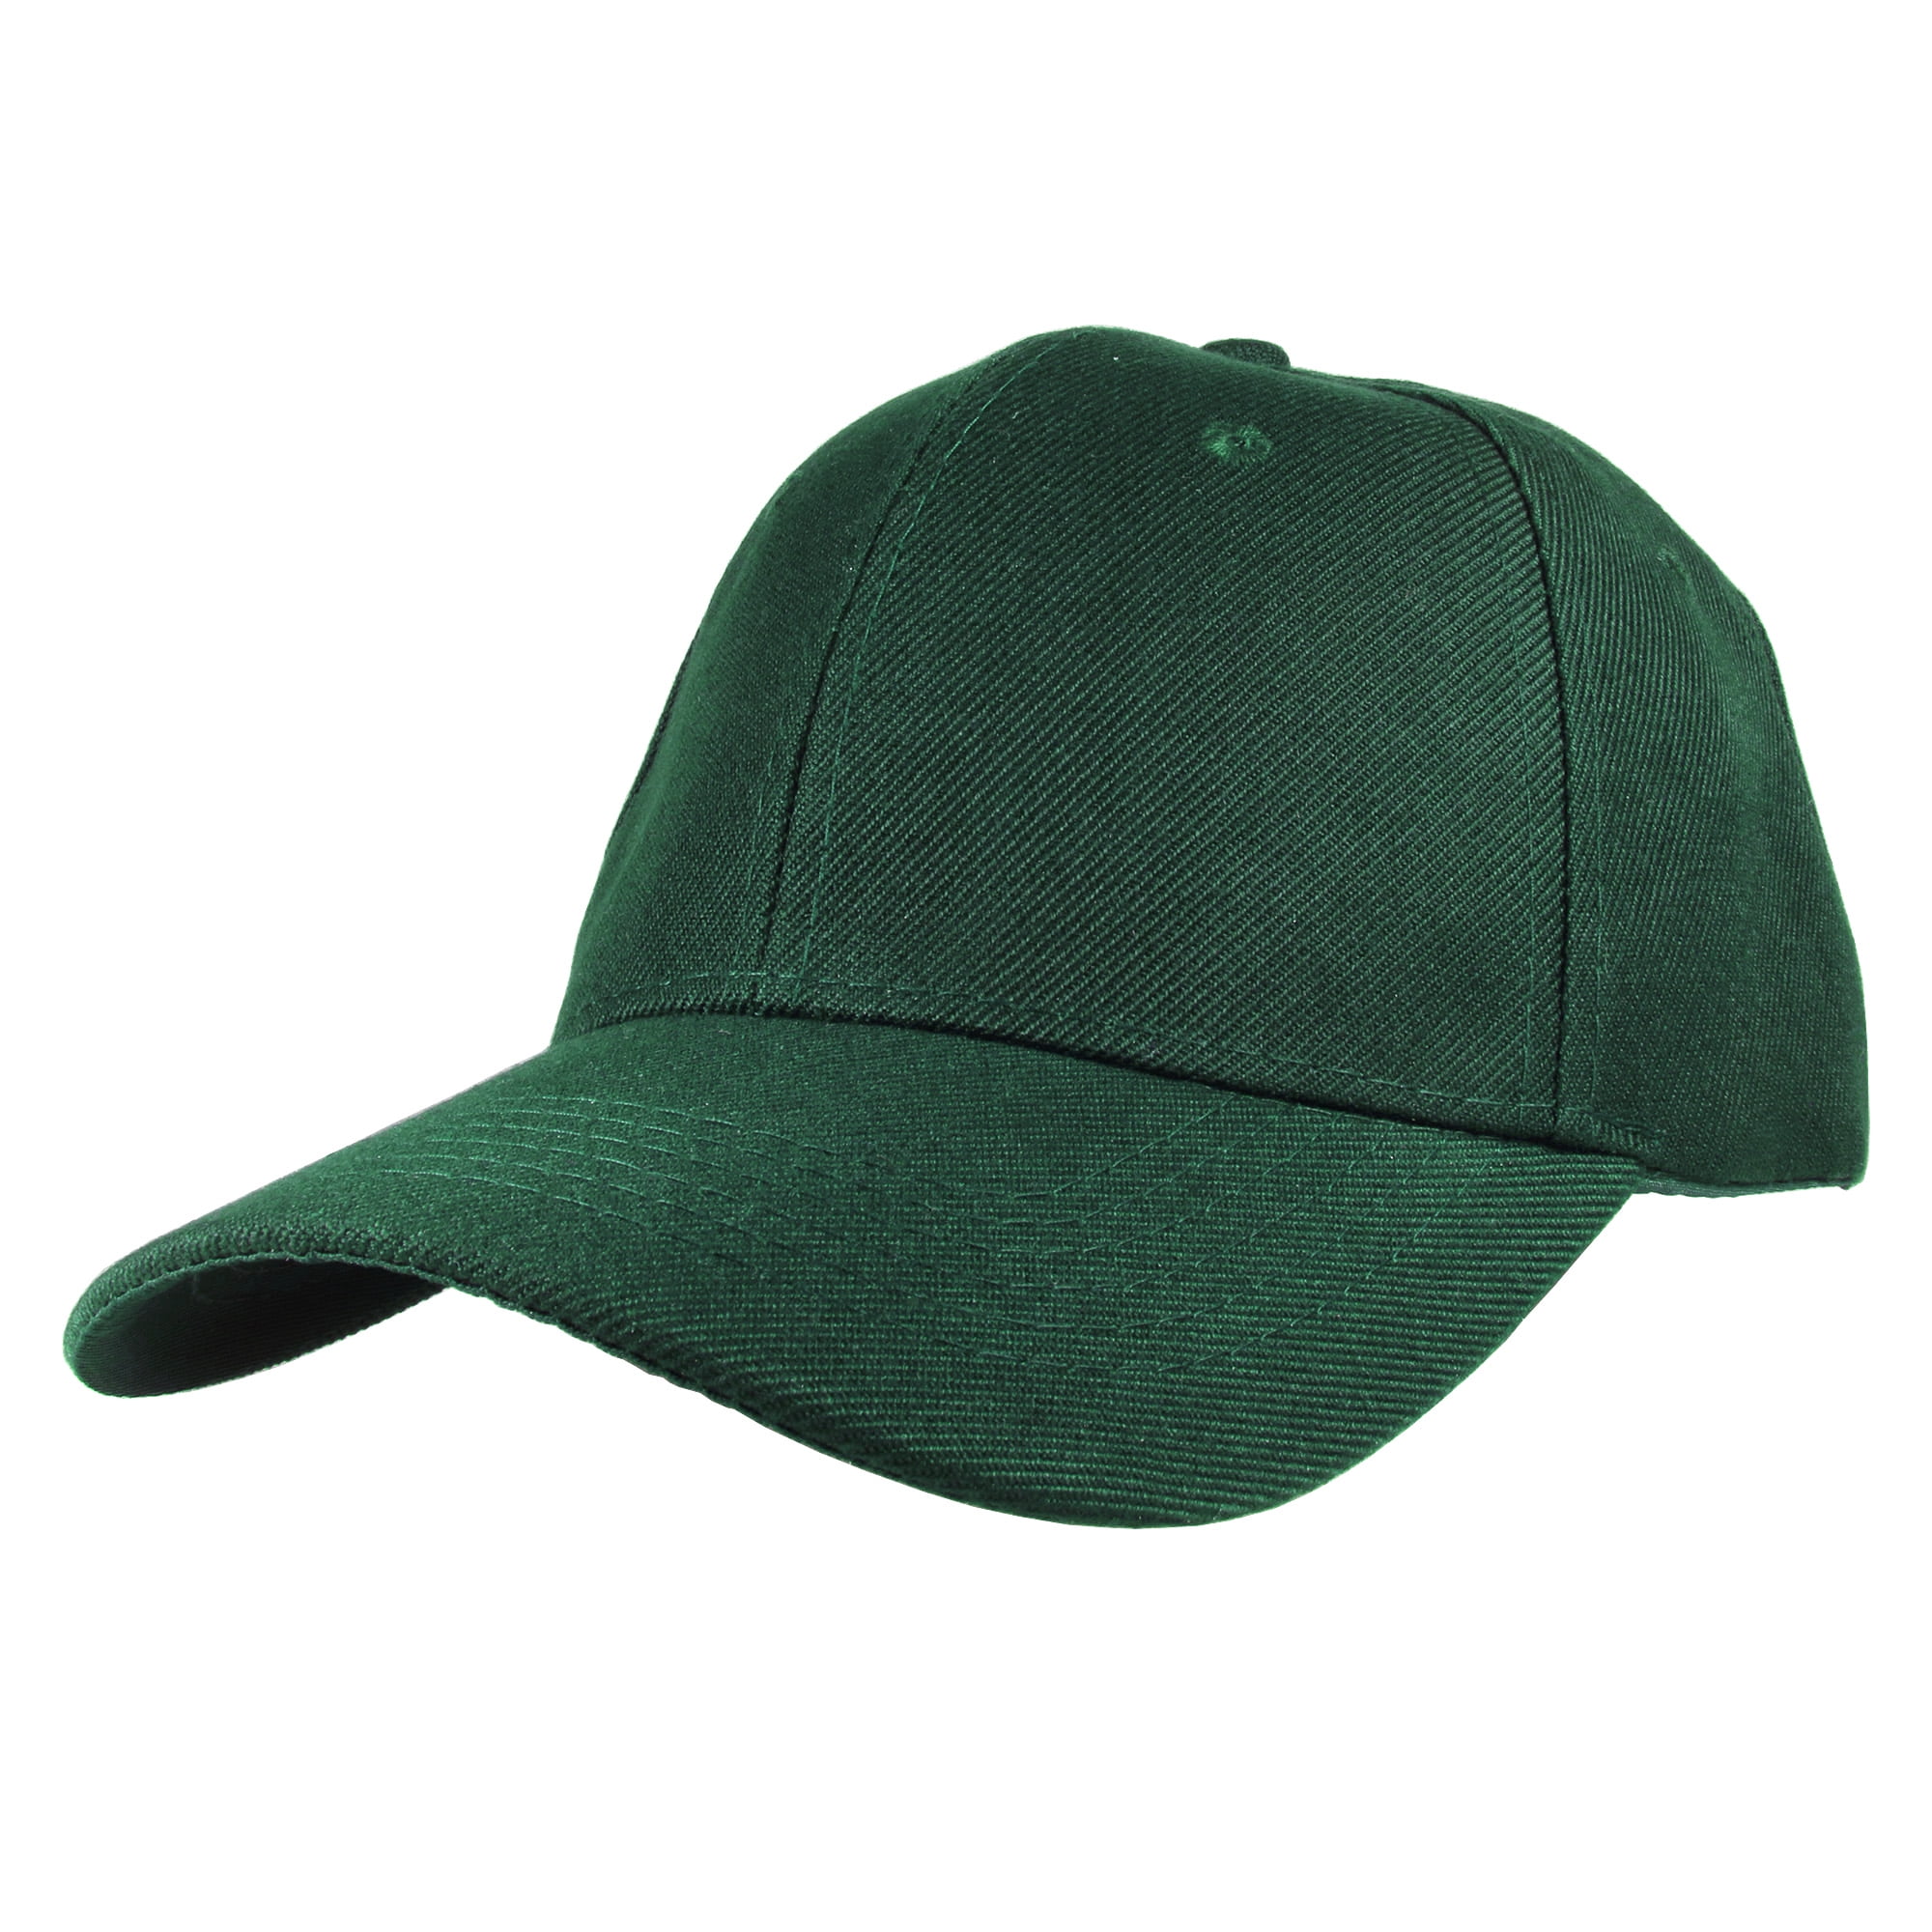 Pack-Hunter Back Gelante Plain Baseball Cap Green Strap Adjustable Hat 12 Adult